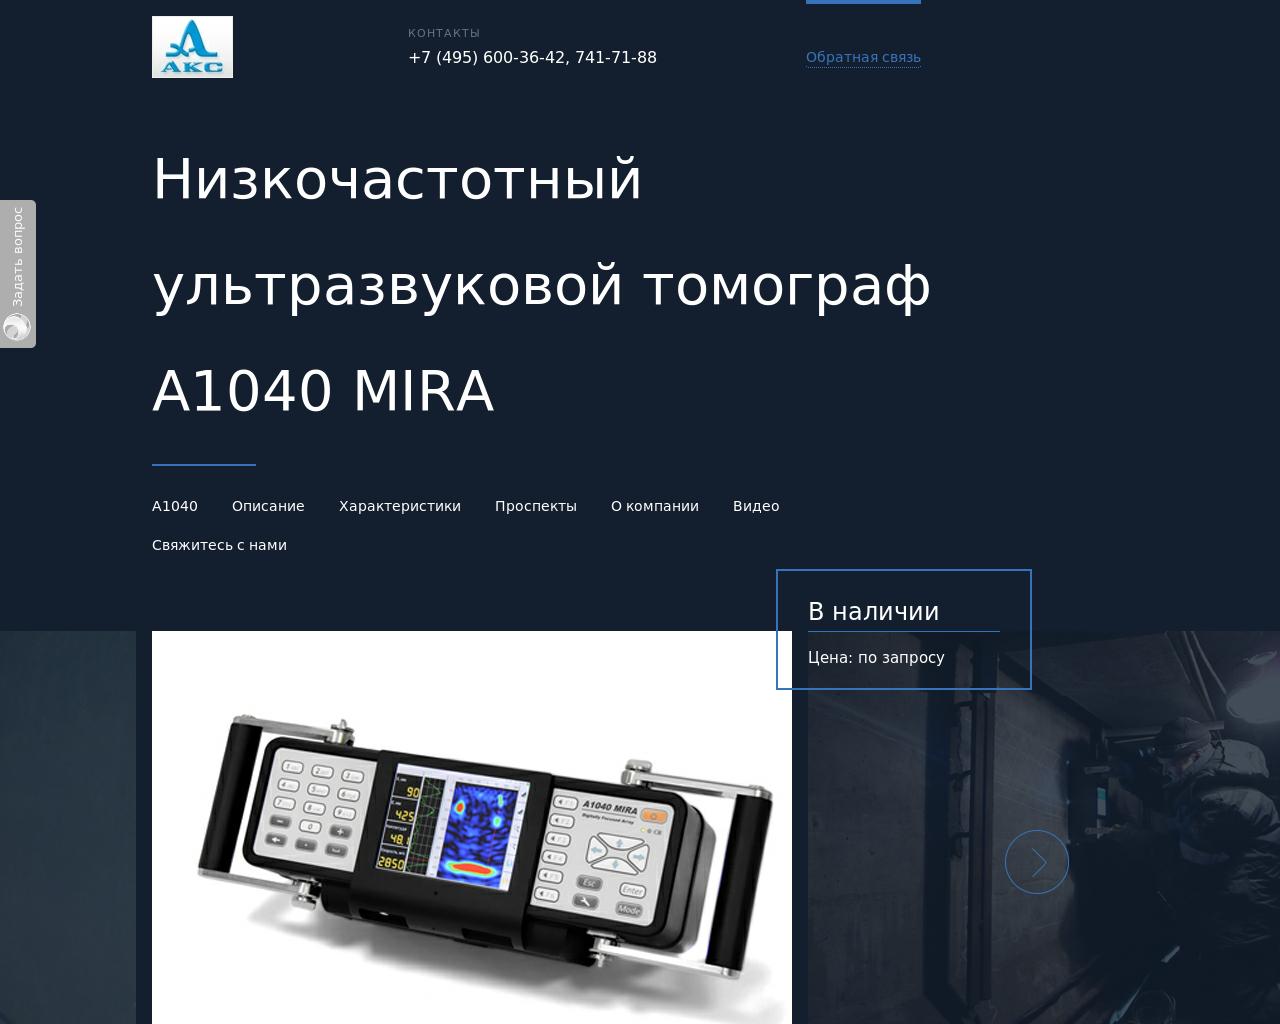 Изображение сайта a1040.ru в разрешении 1280x1024